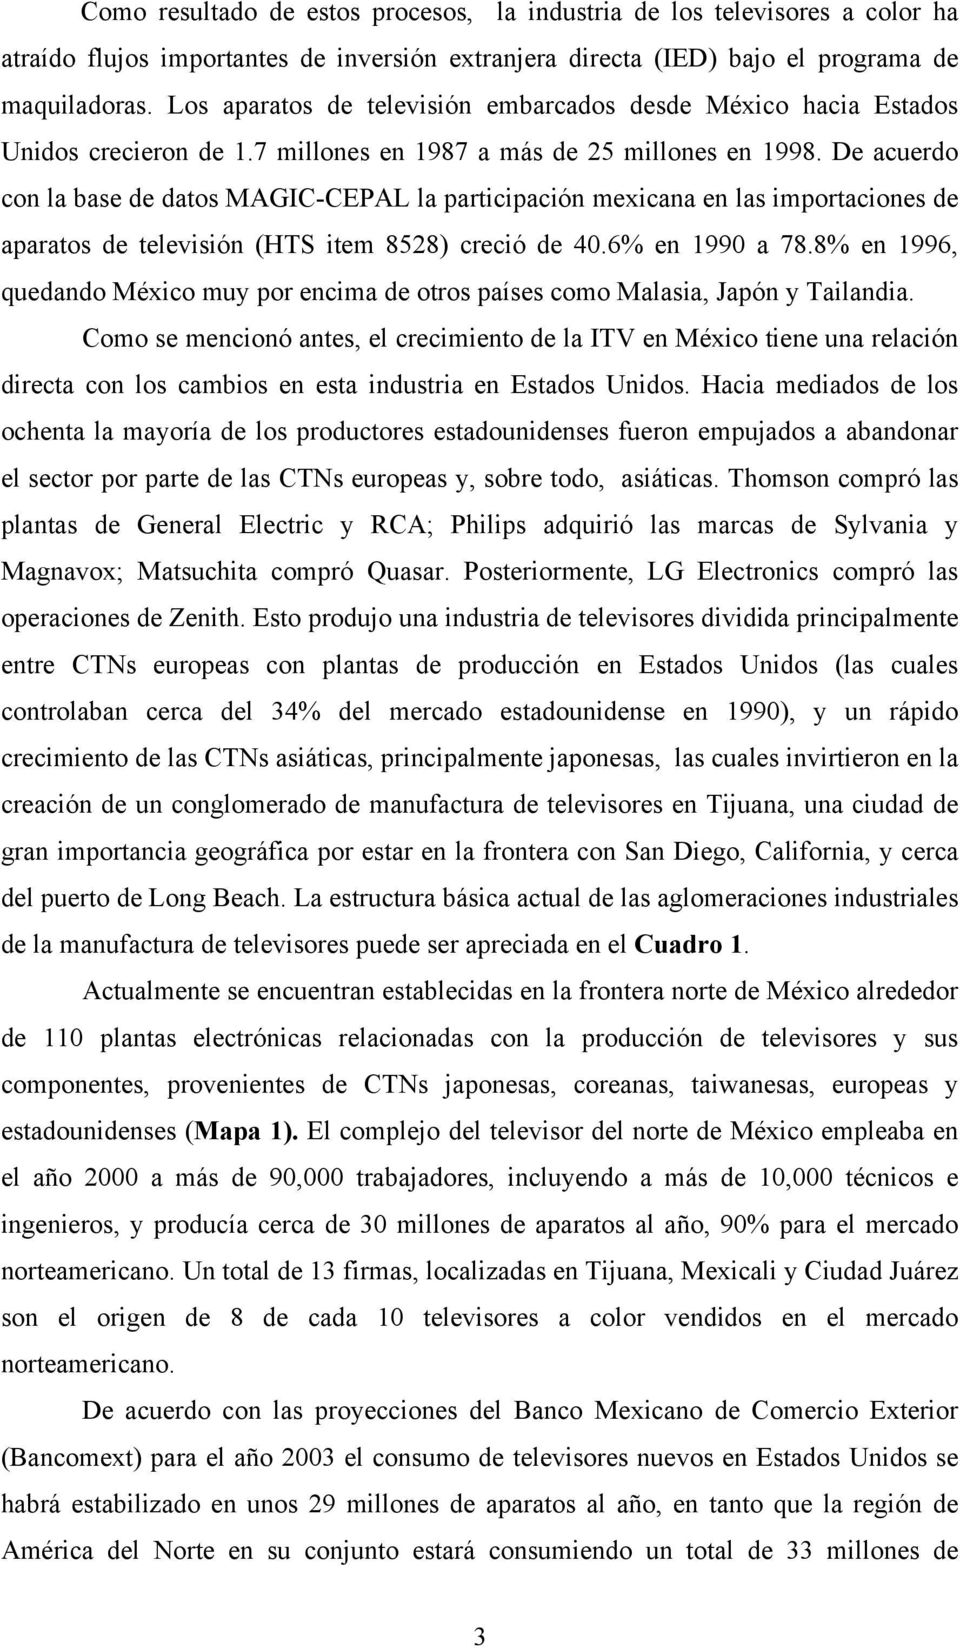 De acuerdo con la base de datos MAGIC-CEPAL la participación mexicana en las importaciones de aparatos de televisión (HTS item 8528) creció de 40.6% en 1990 a 78.